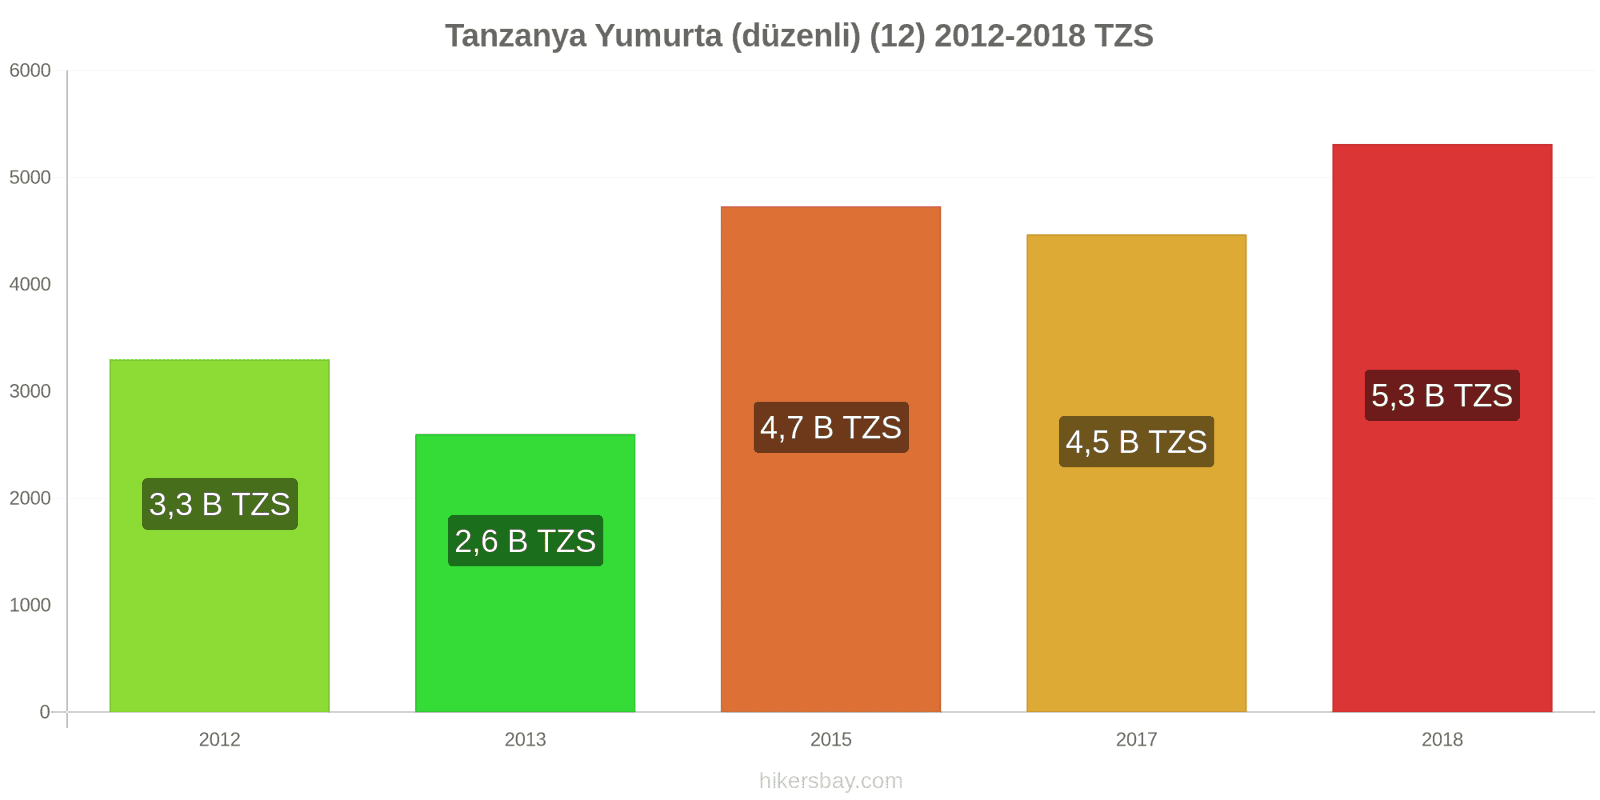 Tanzanya fiyat değişiklikleri Yumurta (normal) (12) hikersbay.com